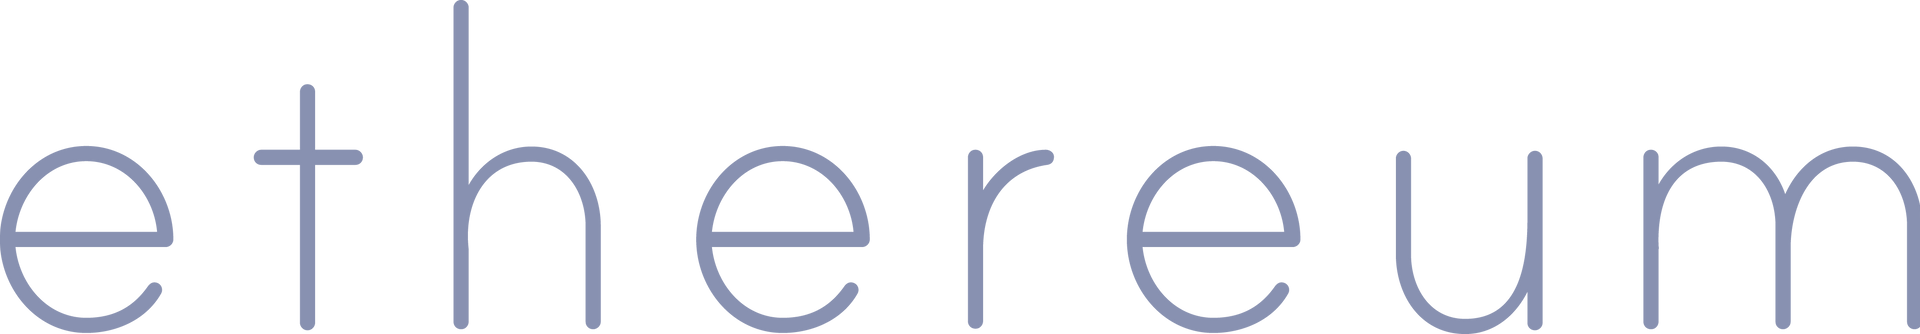 Графічний знак ETH (фіолетовий)